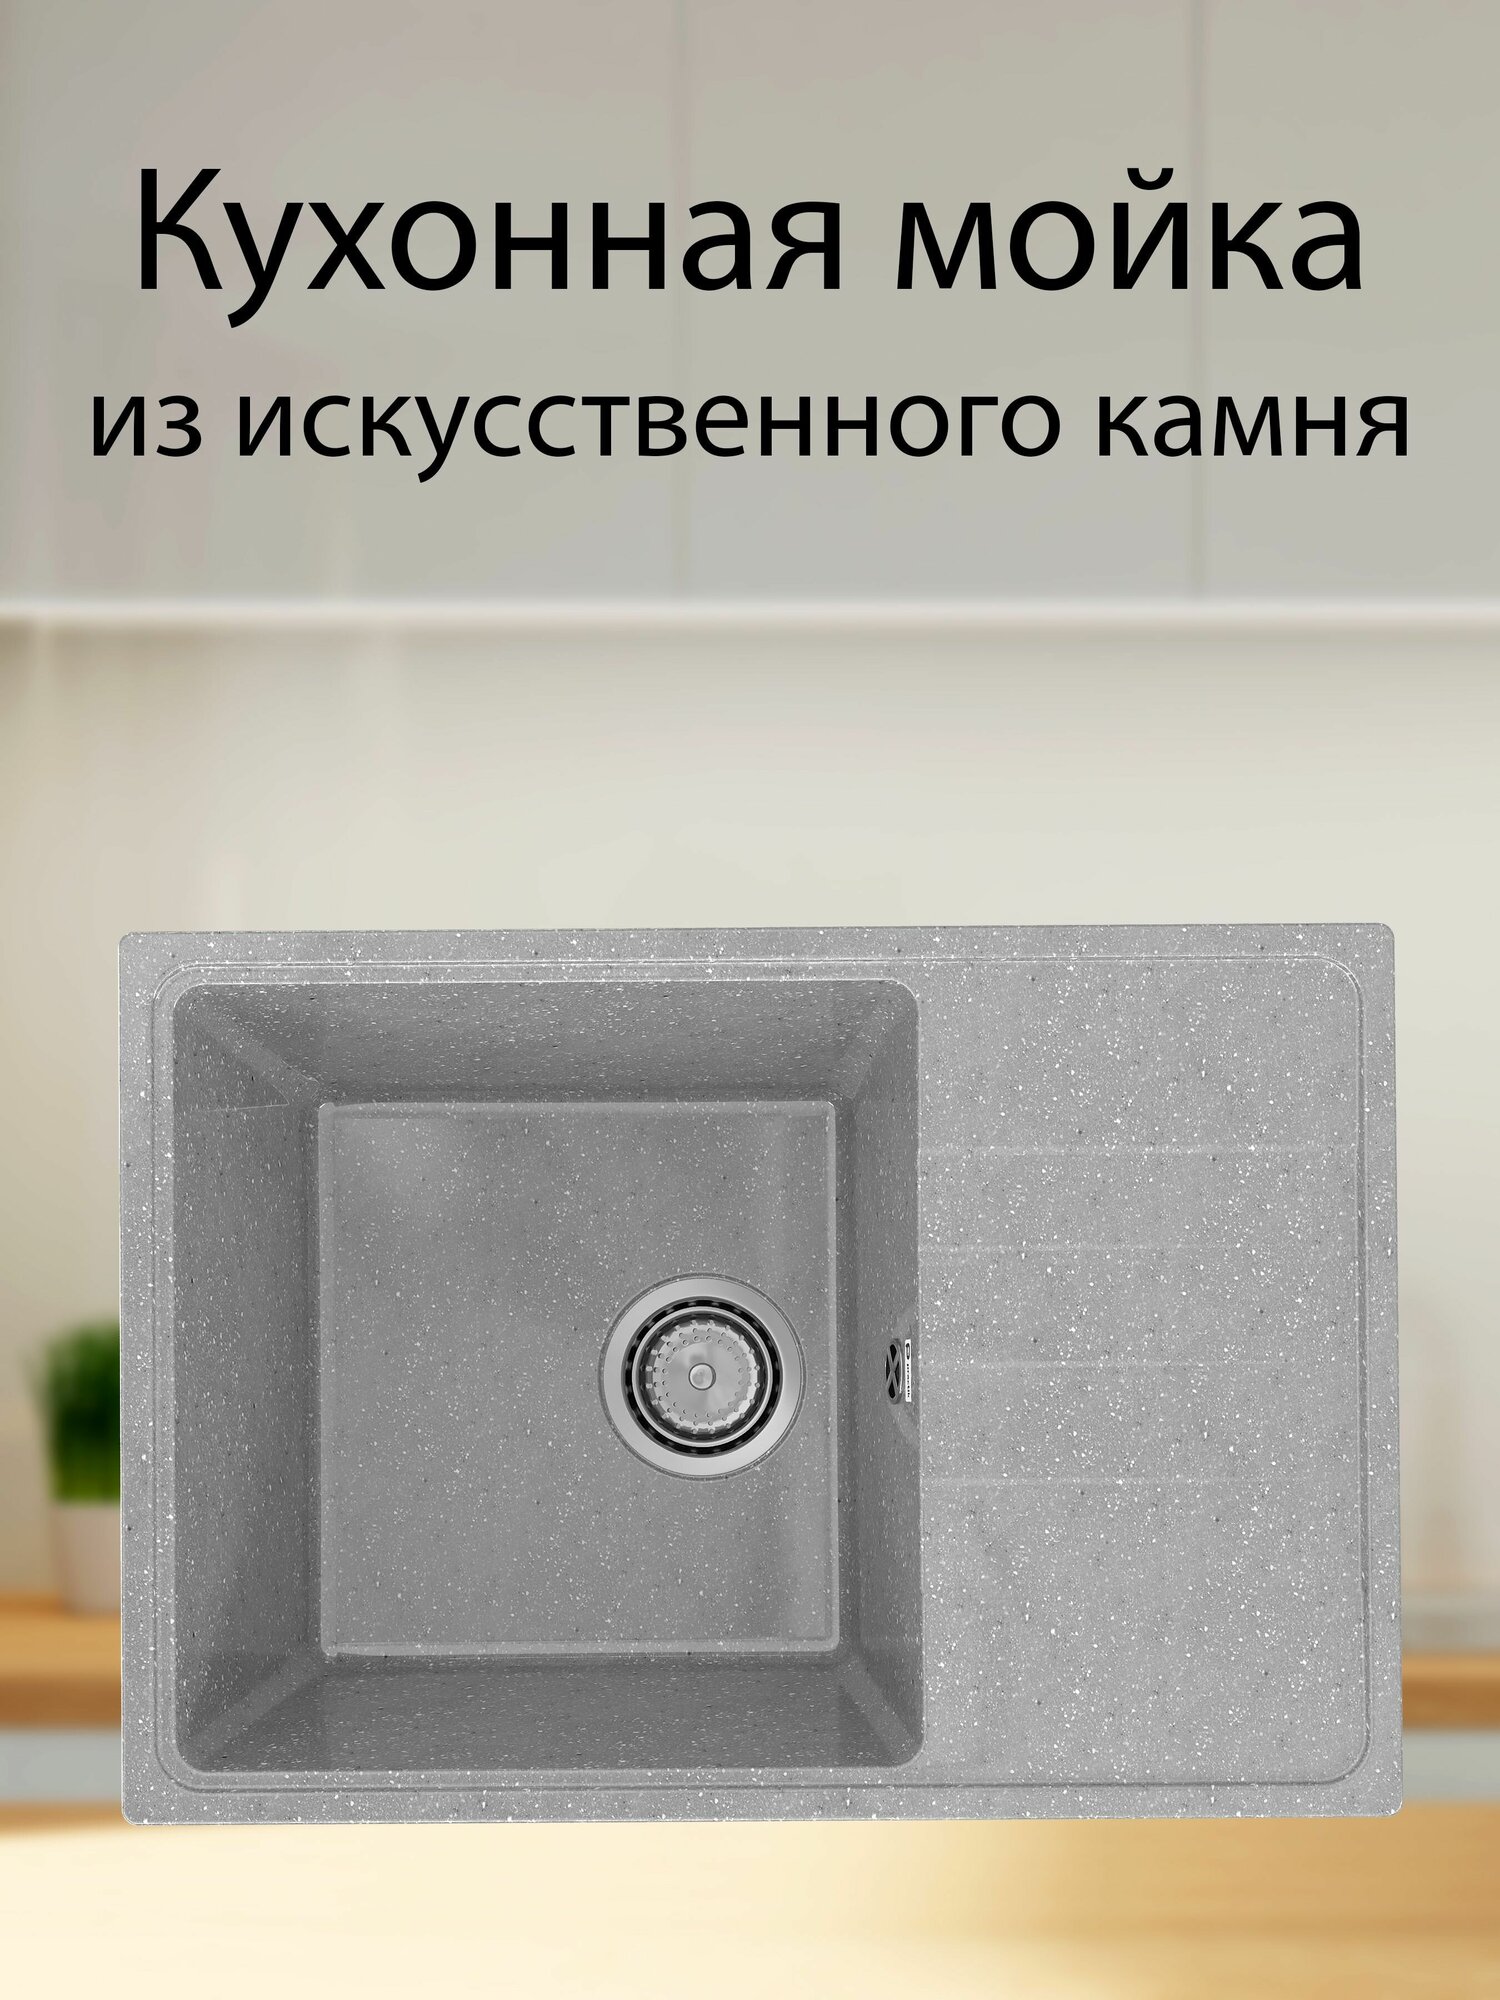 Мойка для кухни, глянцевая раковина Practik 600 х 420 мм из искусственного камня, с оборачиваемым крылом - фотография № 3